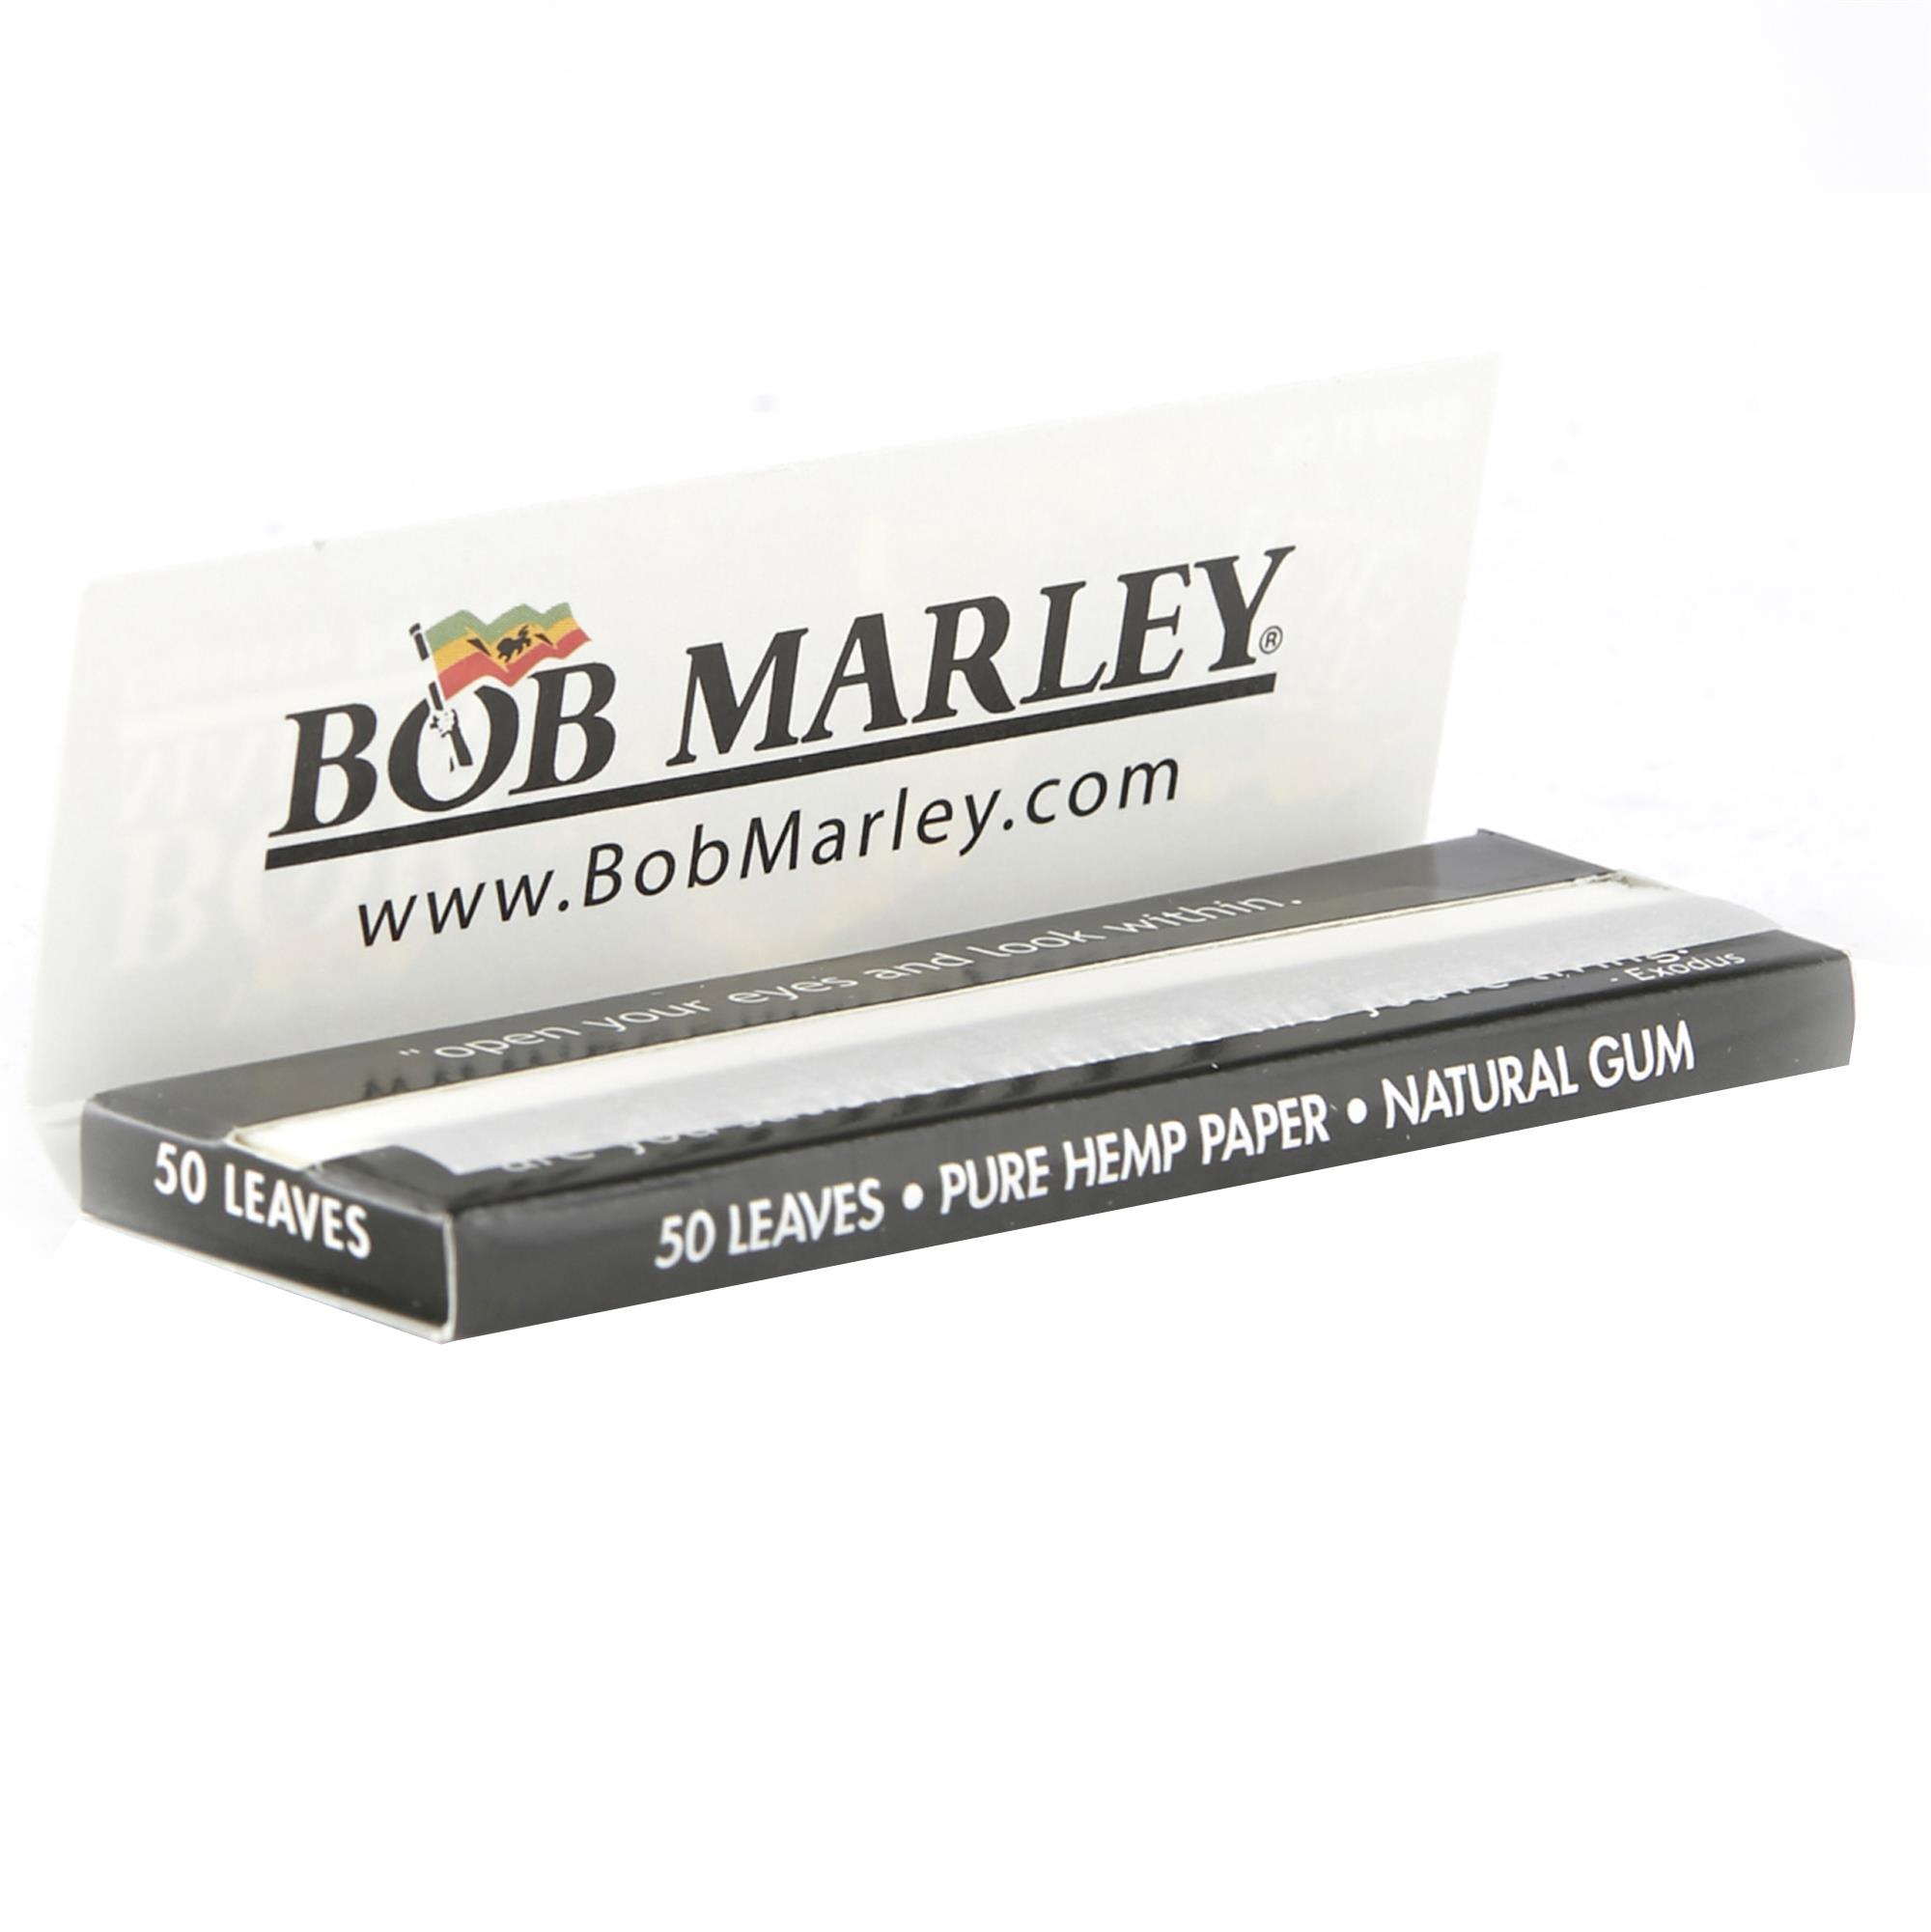 BOB MARLEY